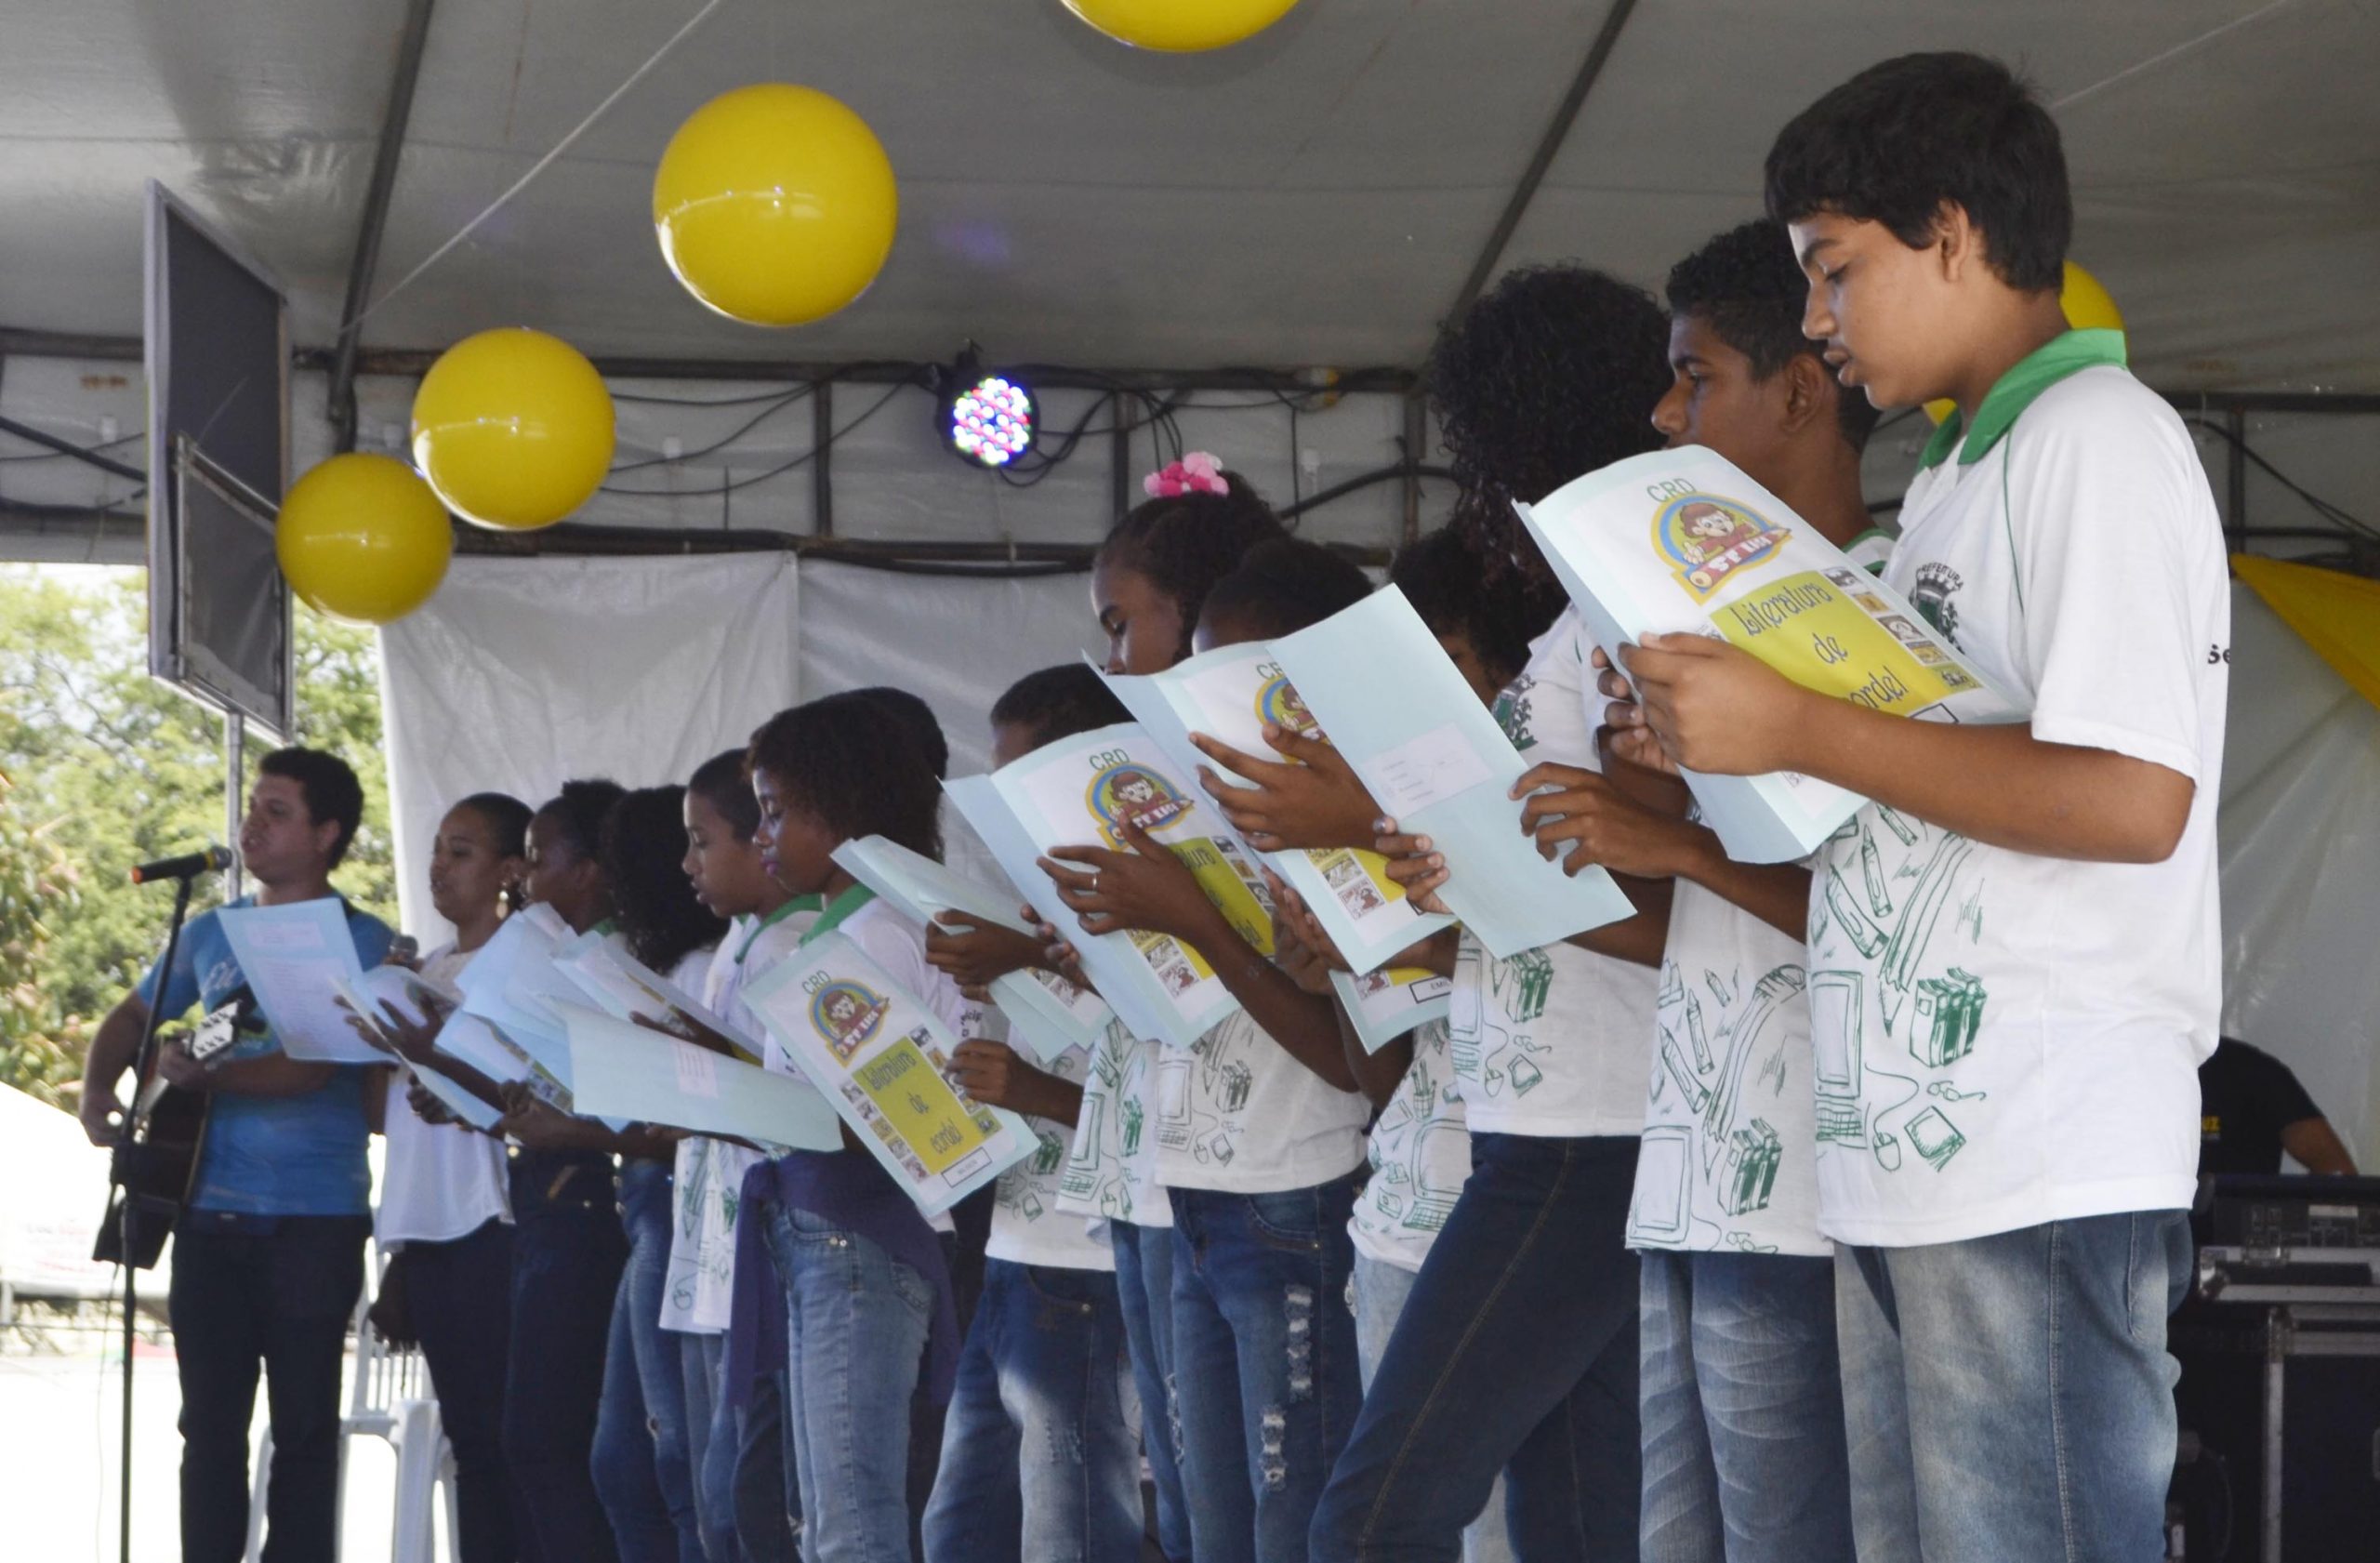 Escolas municipais levam talentos ao palco da Feira do Livro nesta terça